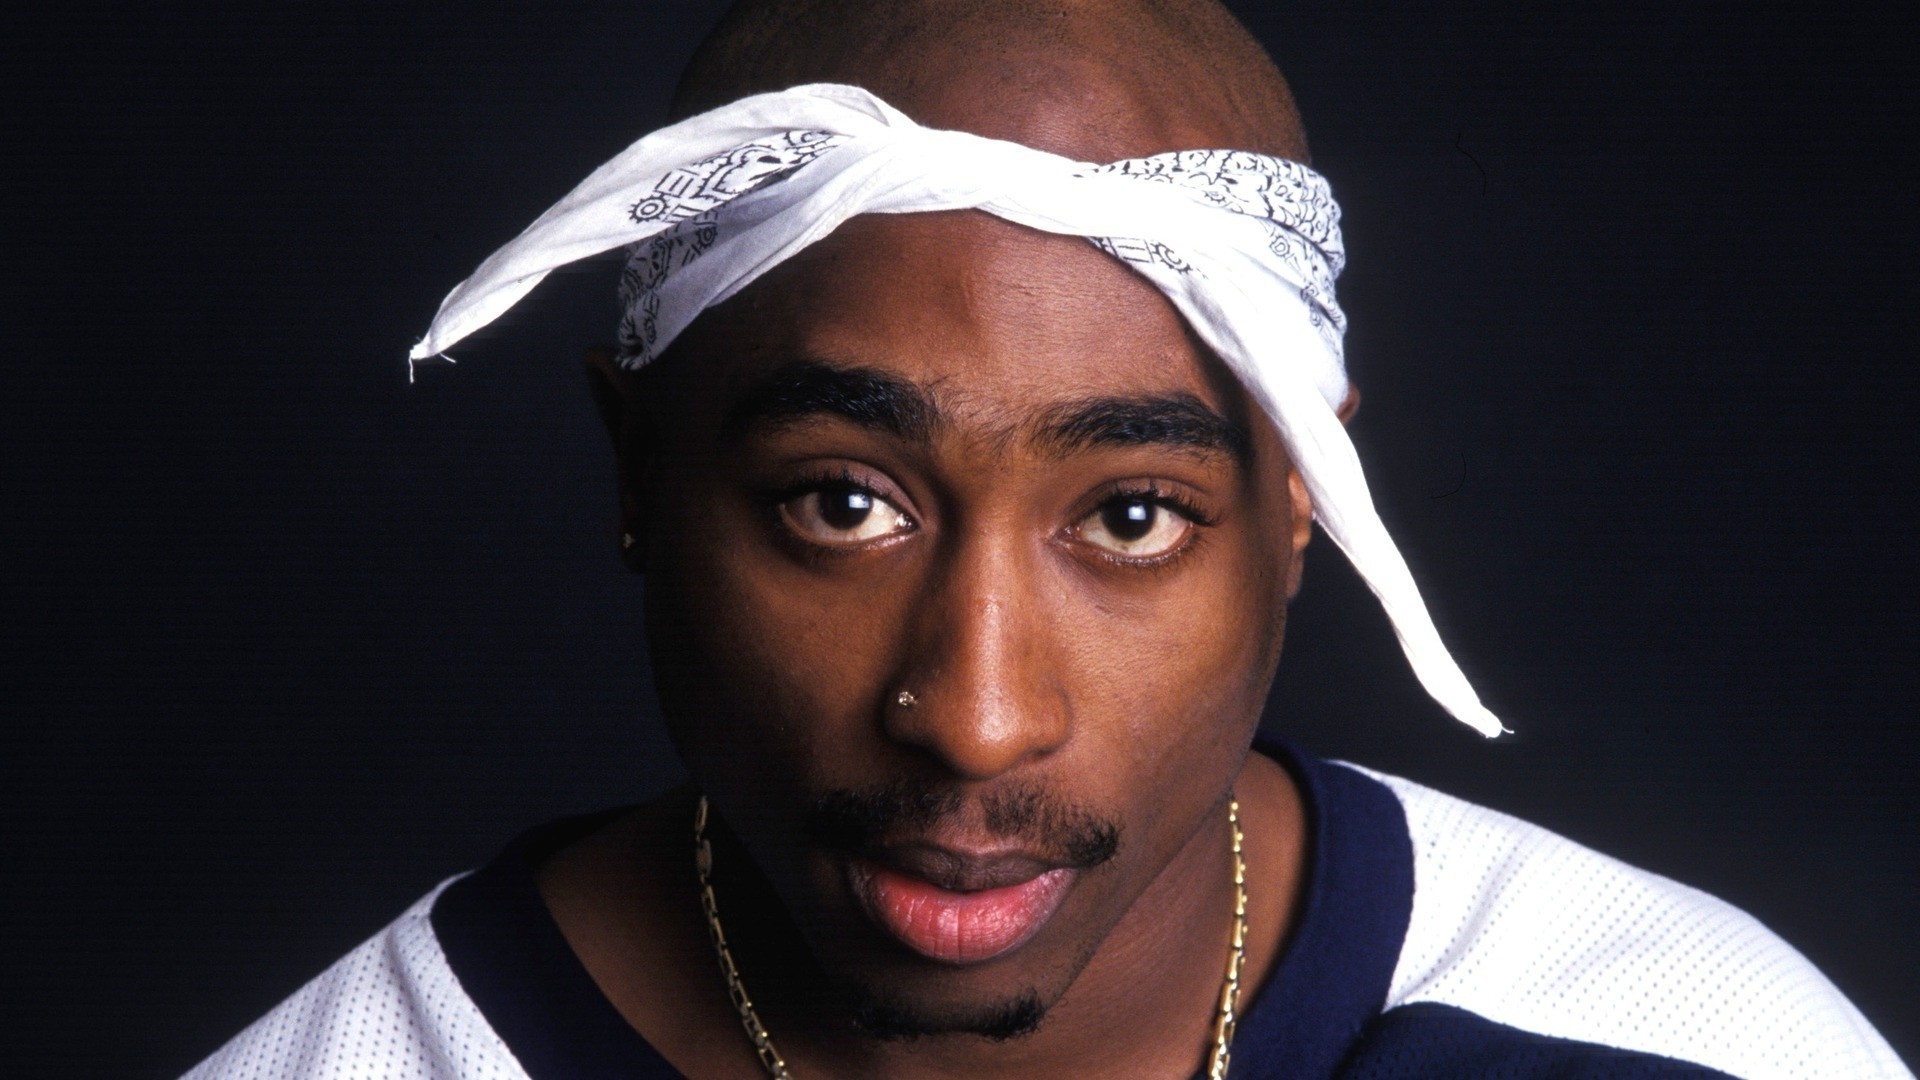 Tupac Shakur - HD Wallpaper 